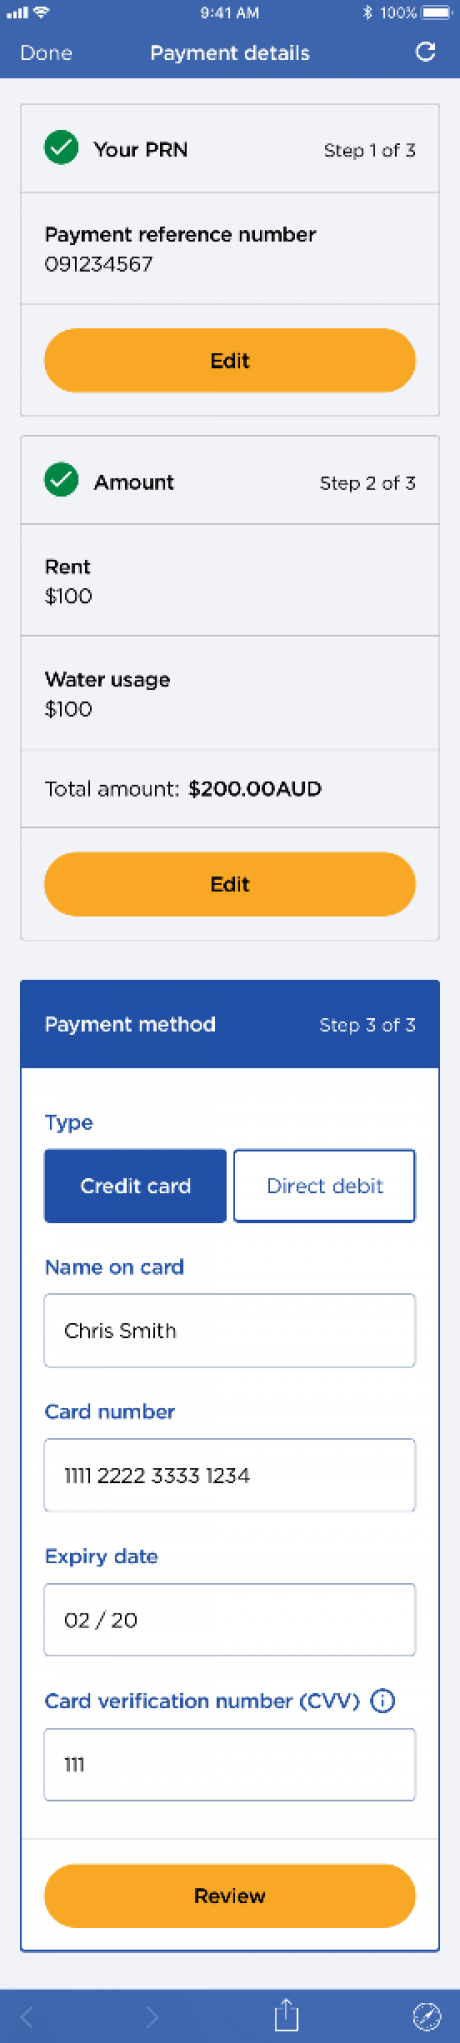 Payment details highlight bottom